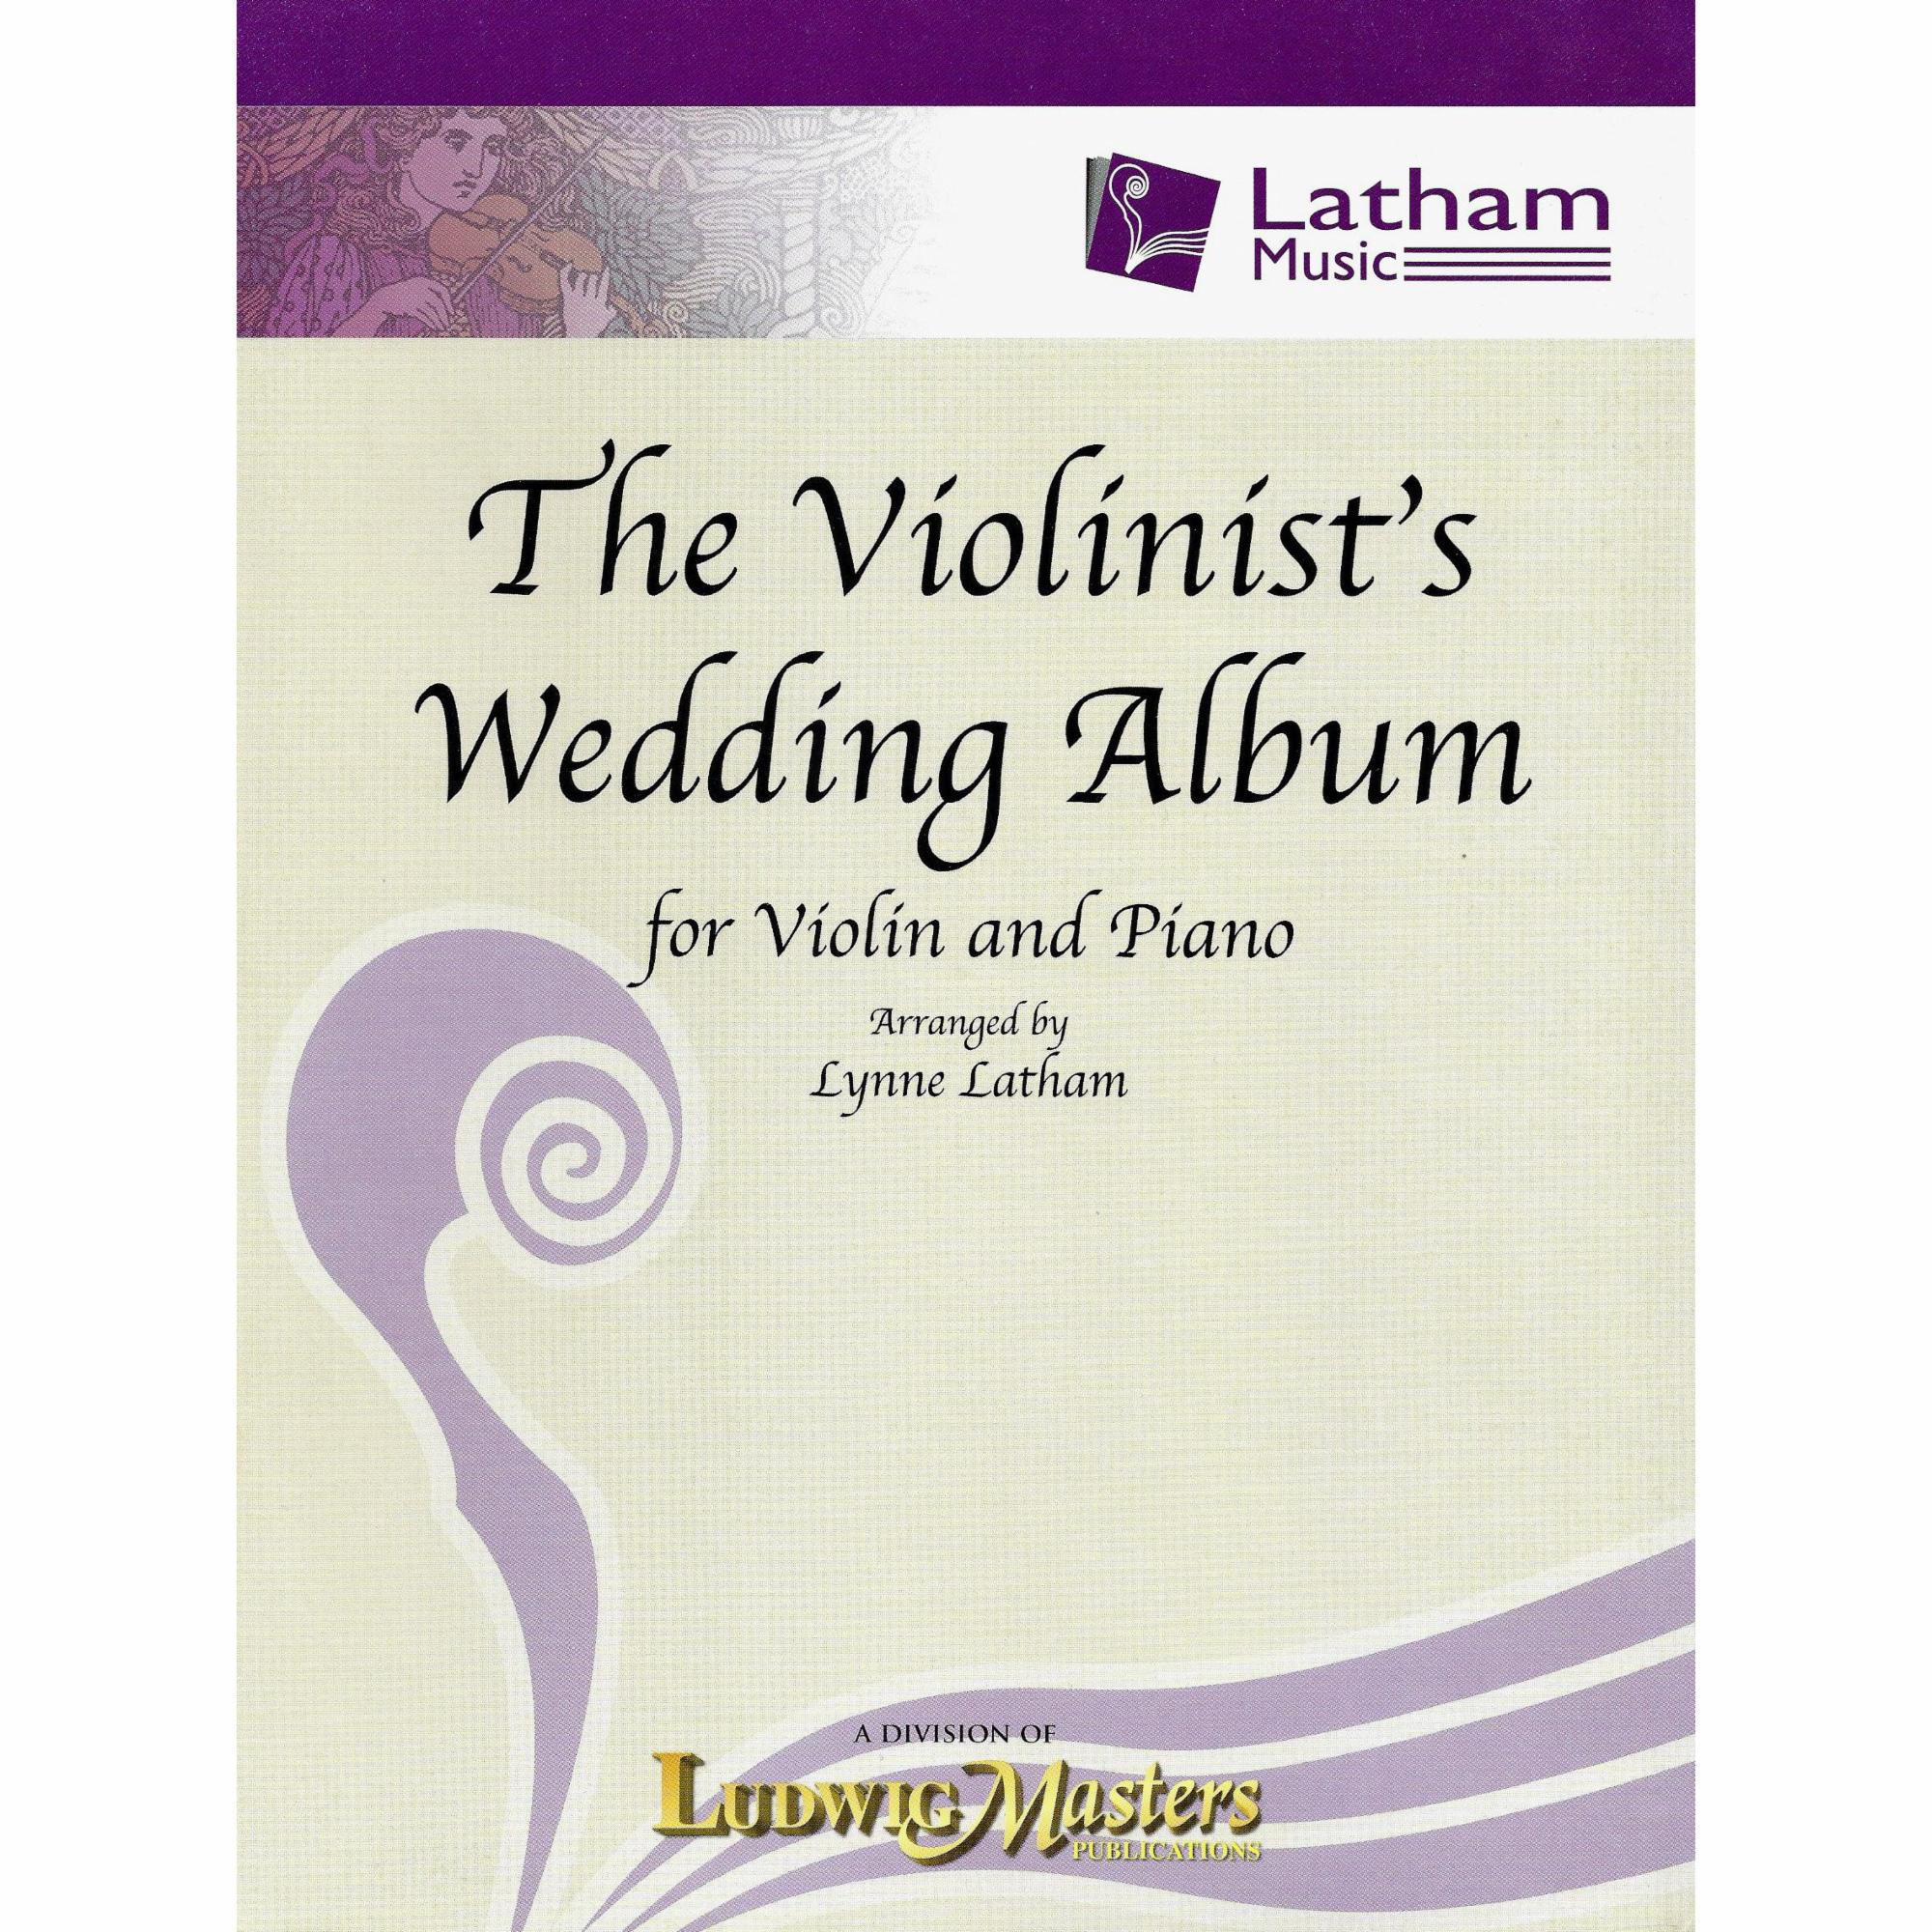 The Violinist's Wedding Album